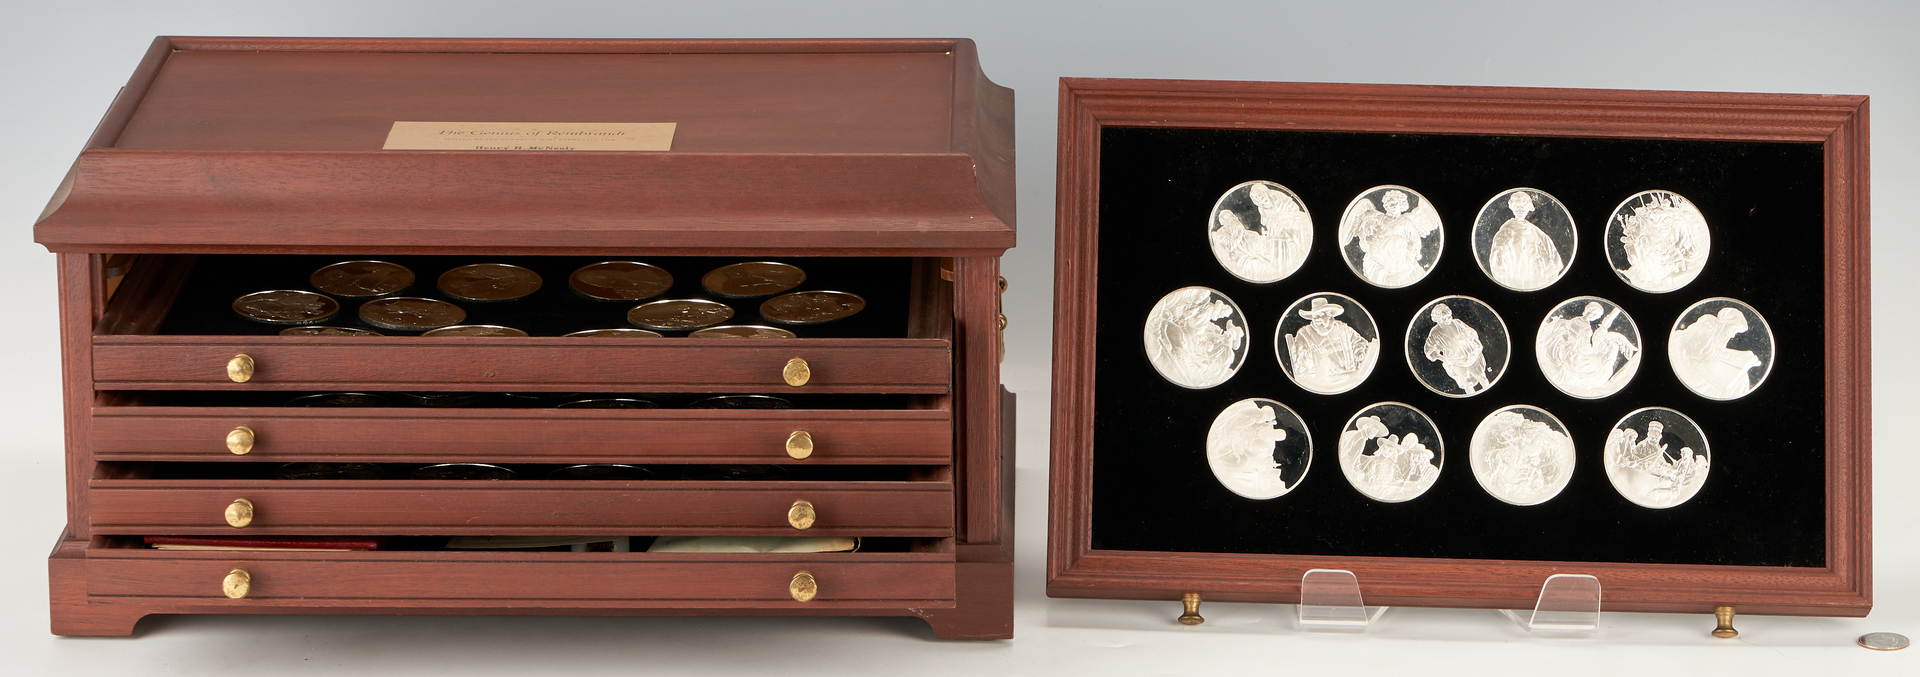 Lot 724: Franklin Mint Rembrandt’s Genius Sterling Silver Proof Medal Set